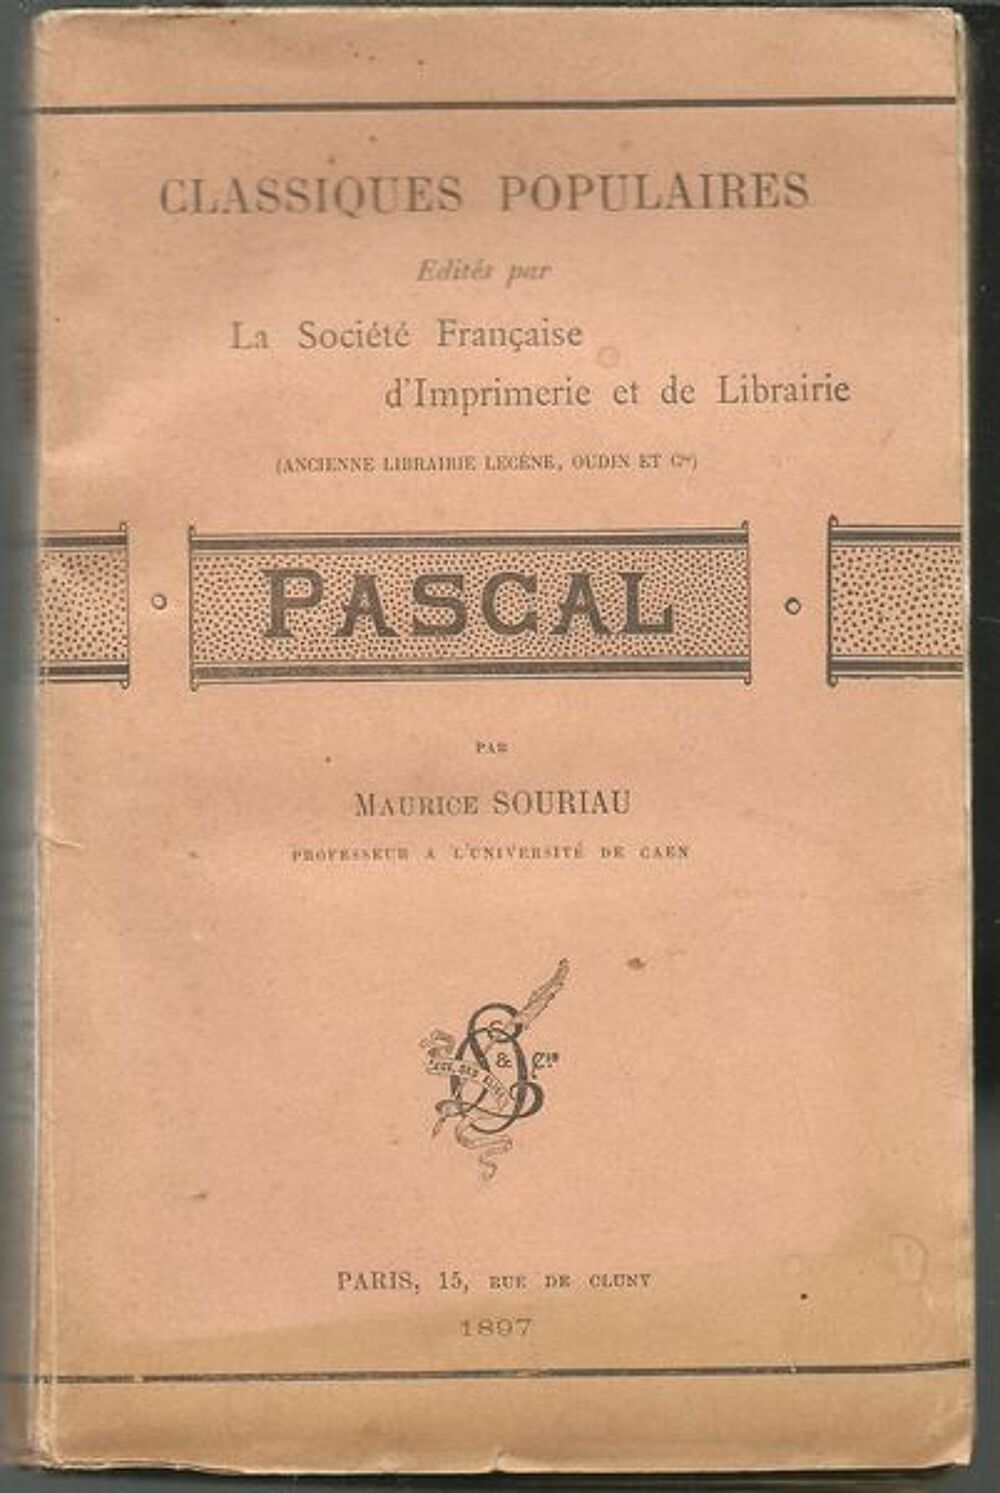 PASCAL par Maurice SOURIAU 1897 Livres et BD